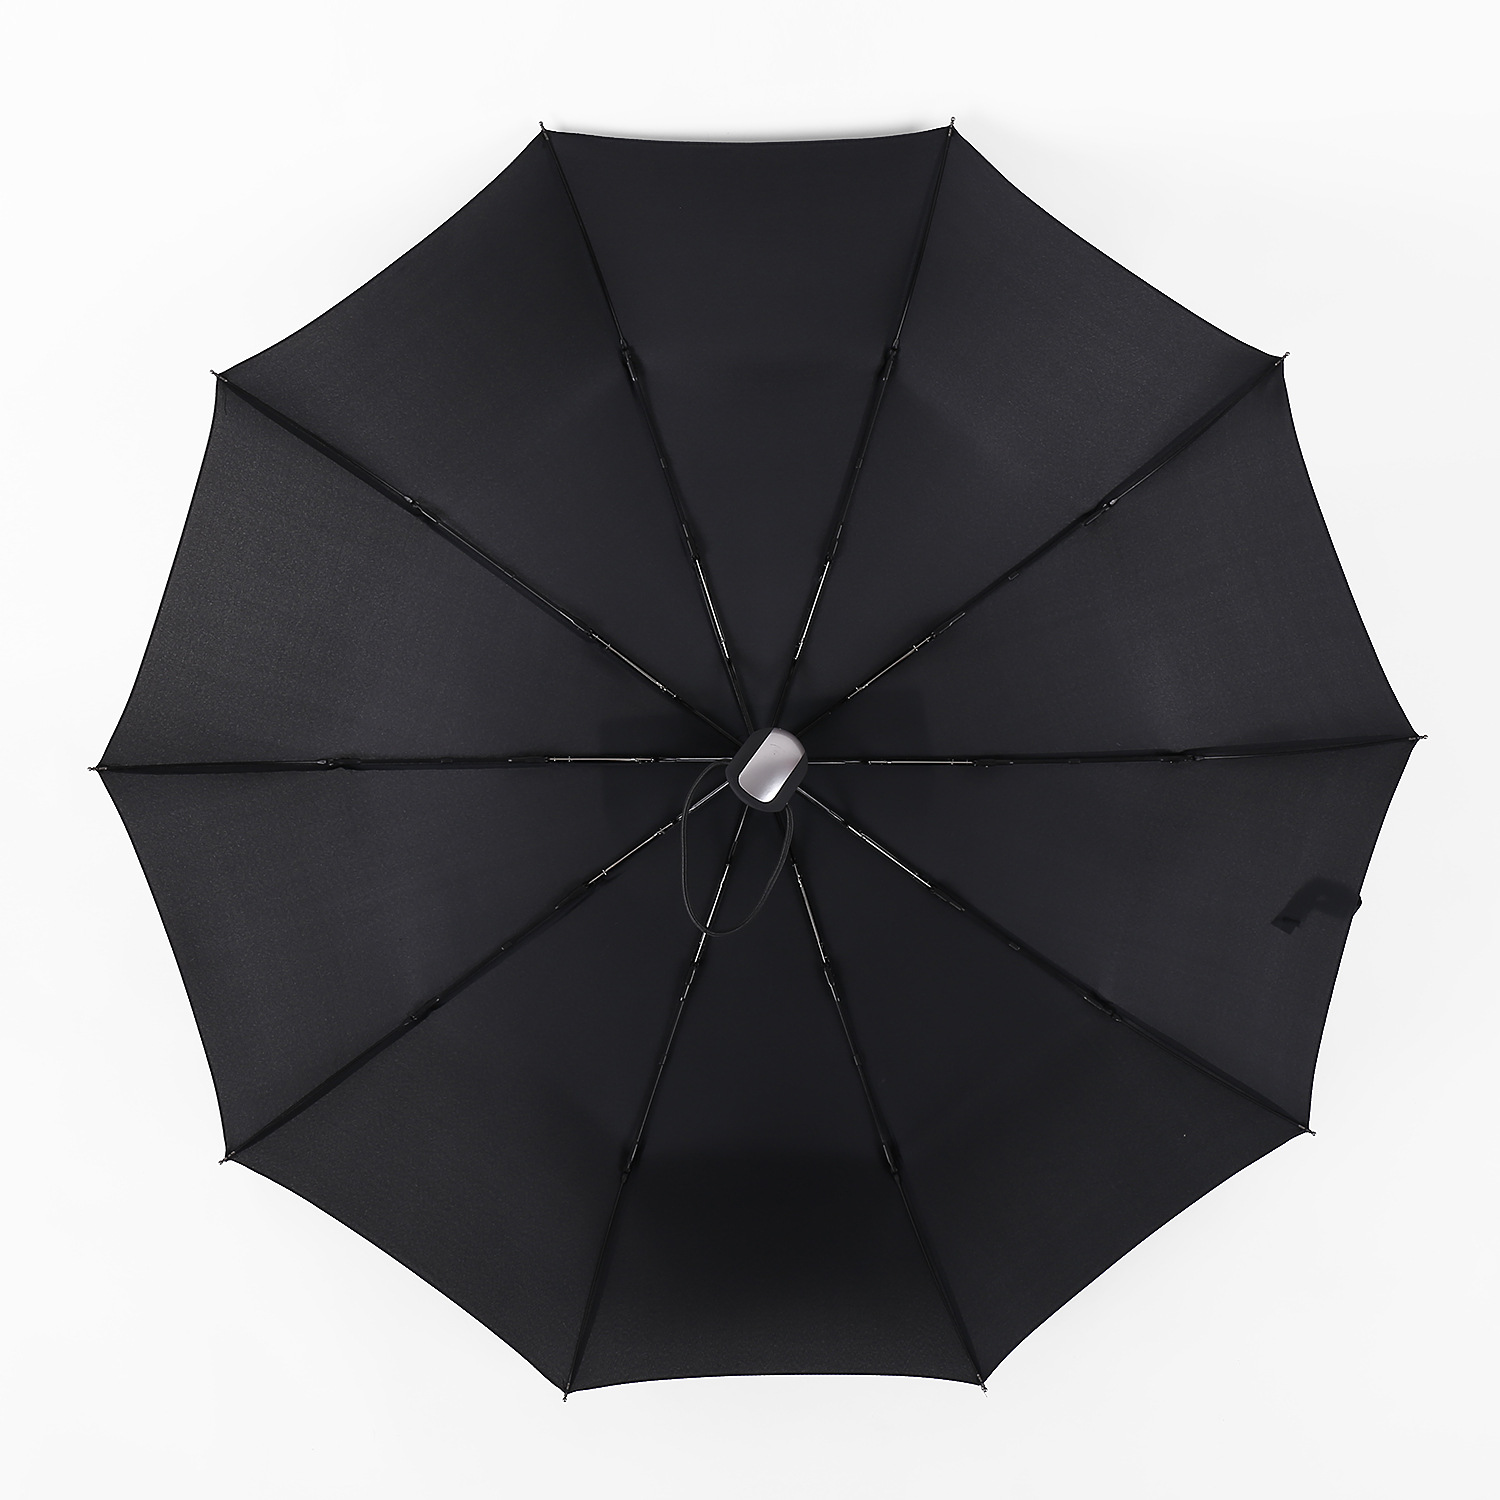 小米有品众筹自动反向折叠伞：晴雨两用+配备照明灯